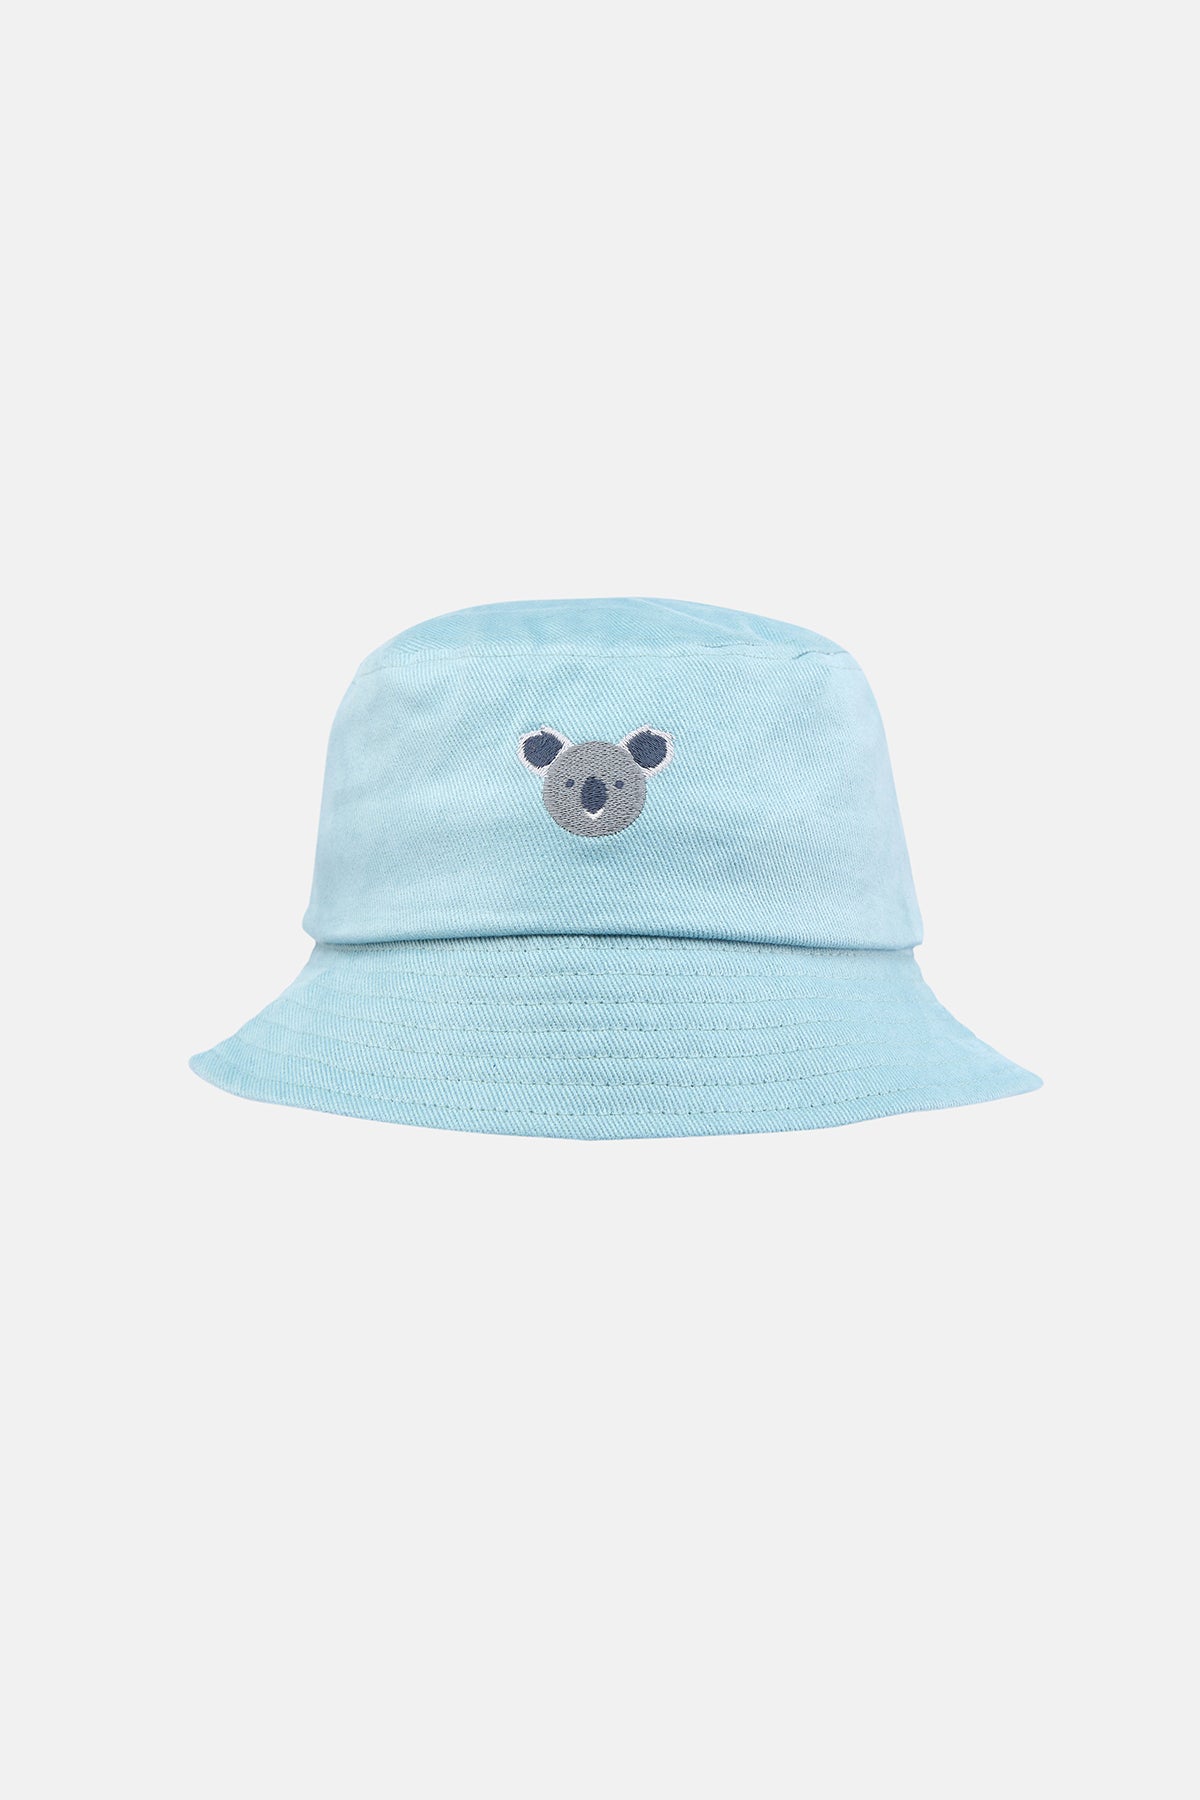 Koala Balıkçı Şapka - Mavi